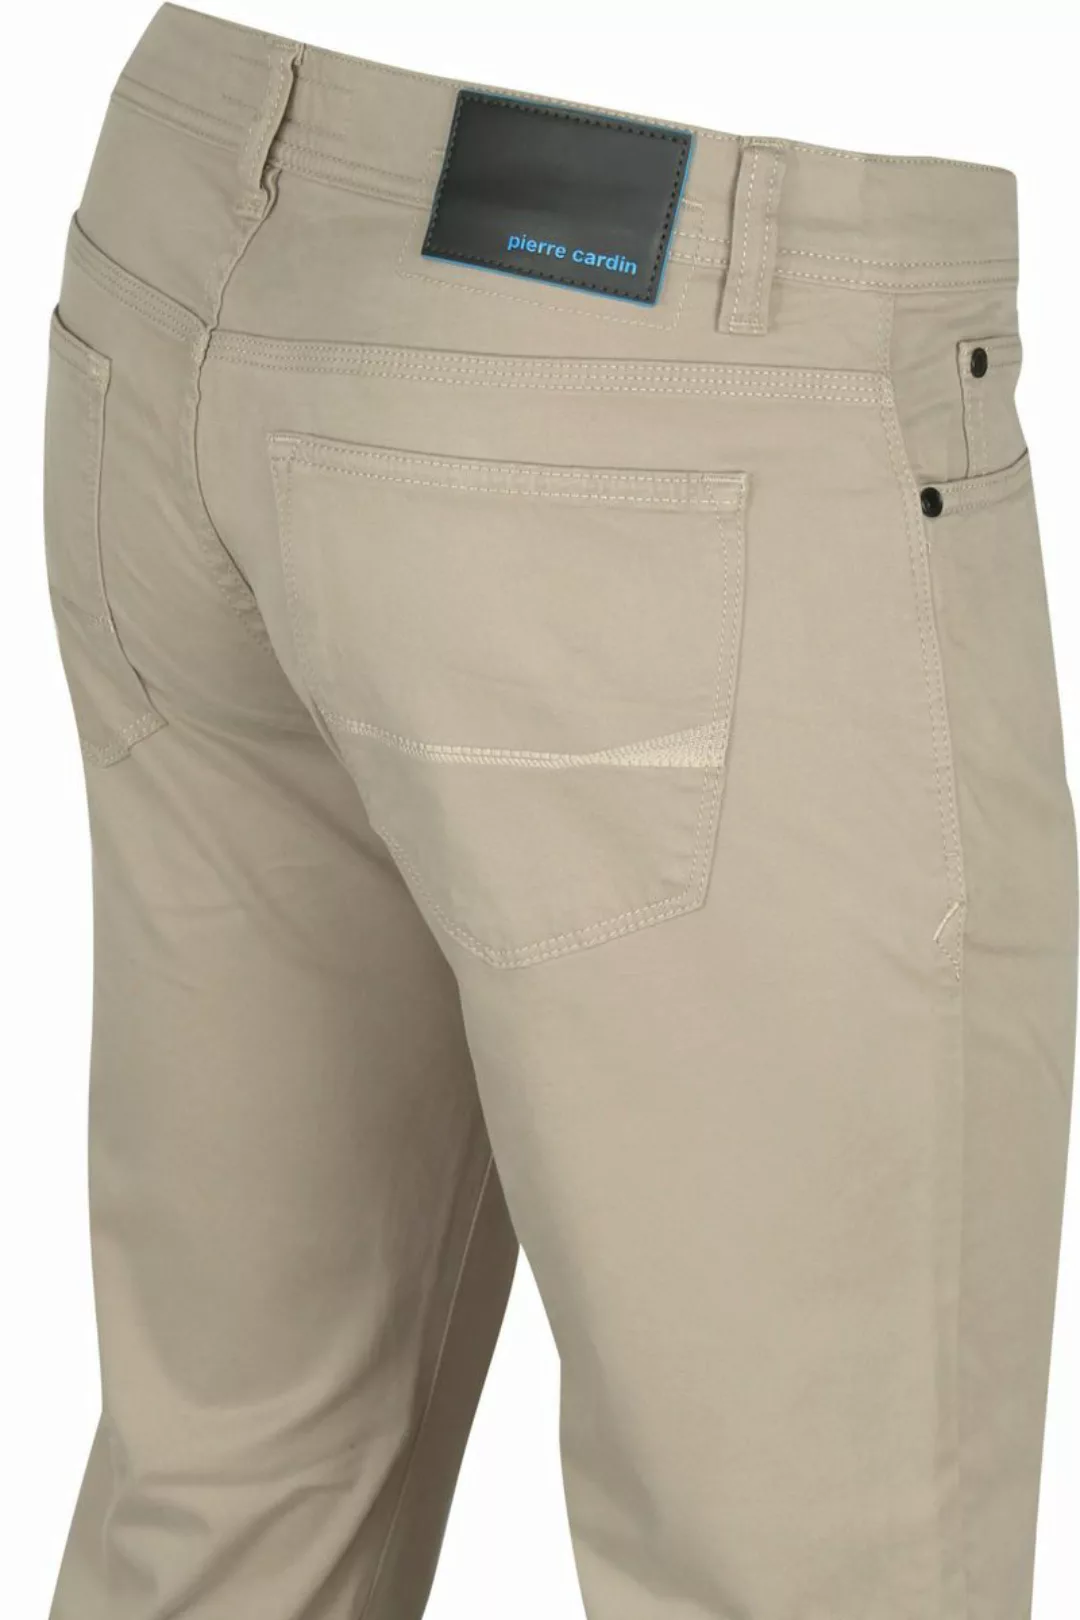 Pierre Cardin Antibes 5 Pocket Hose Khaki - Größe W 34 - L 32 günstig online kaufen